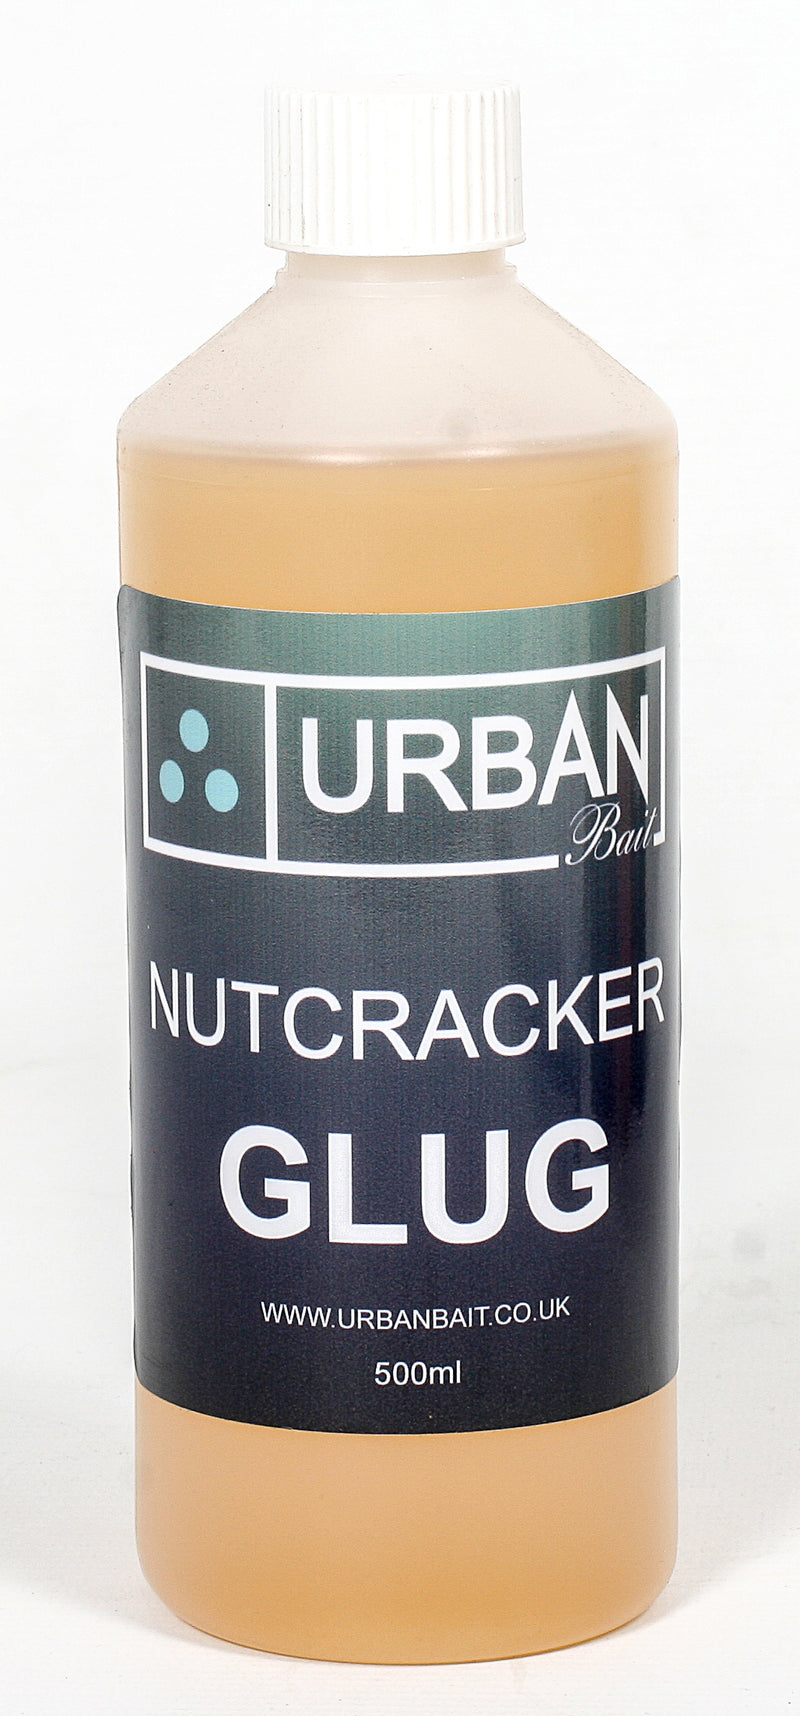 Nutcracker Glug 500ml - Urban Bait